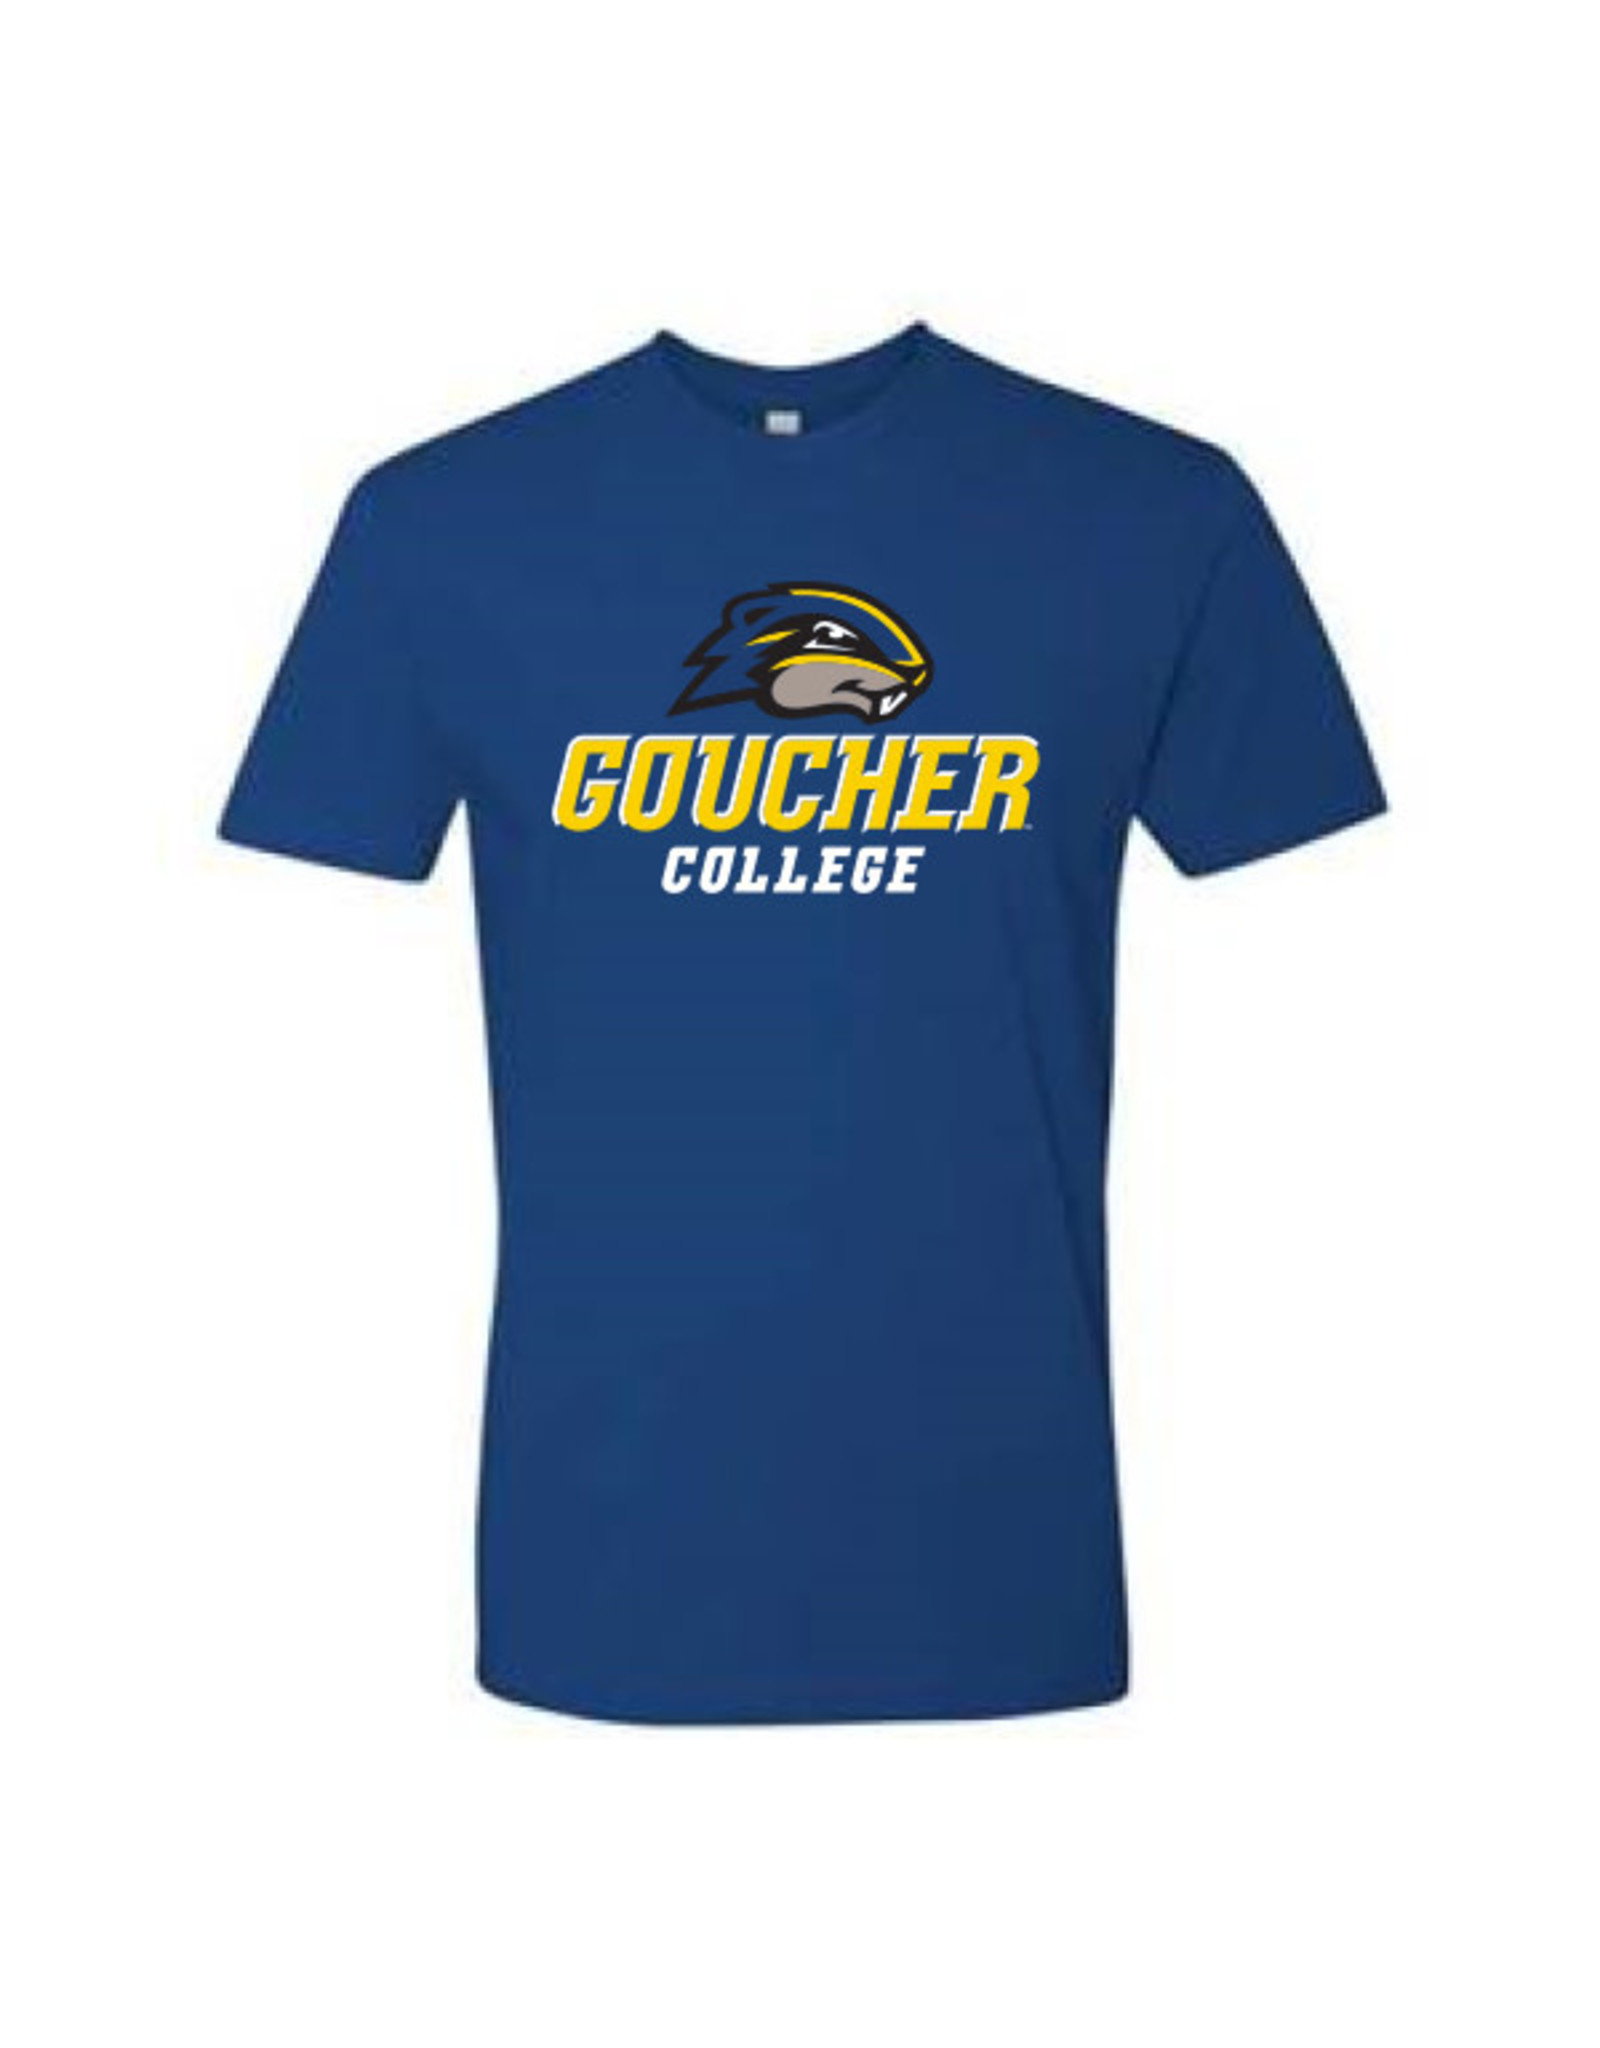 Next Level Cotton T-Shirt "Goucher College w/ Gopher"